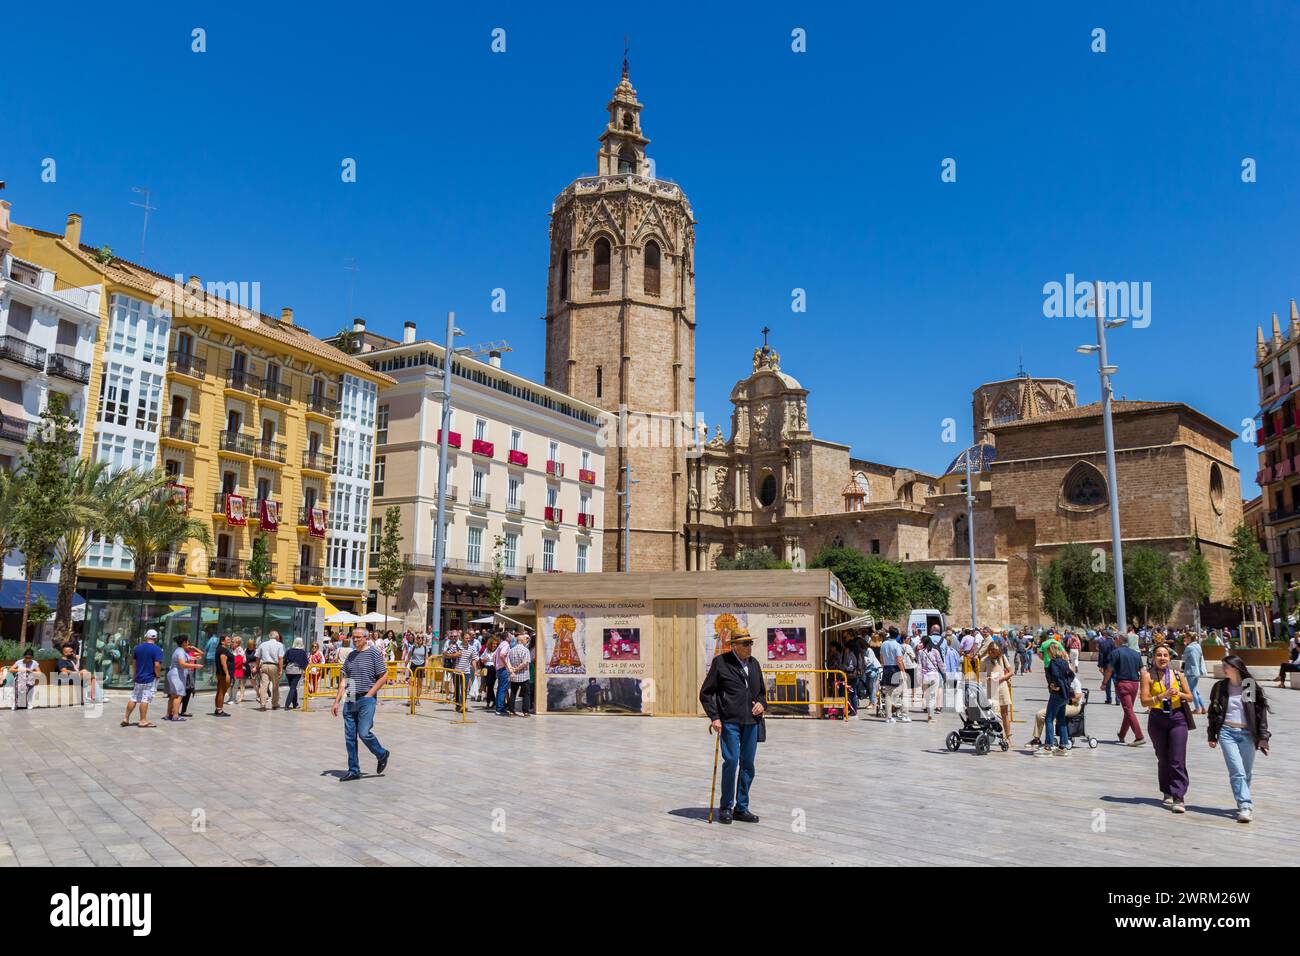 Plaza de la Reina mit der historischen Kathedrale in Valencia, Spanien Stockfoto